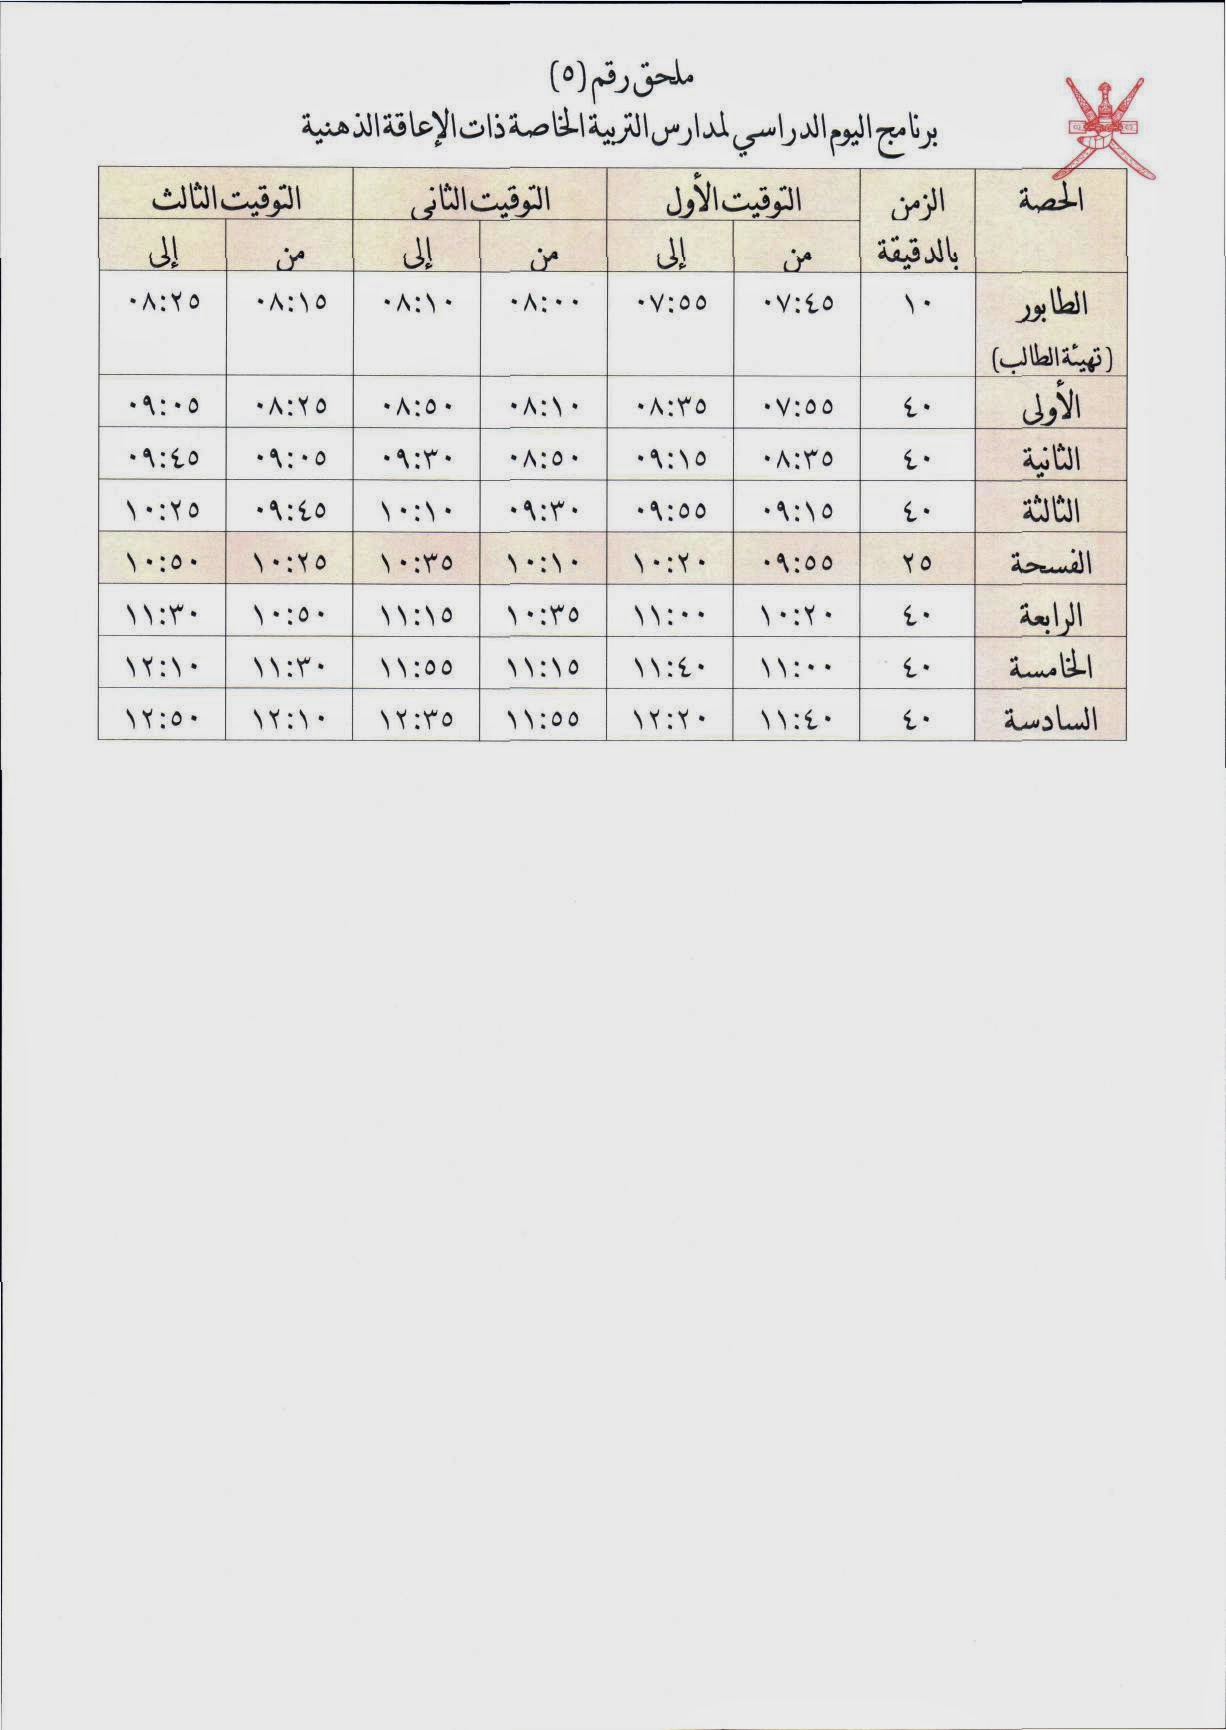 التقويم الدراسي في سلطنة عمان مع الاجازات 2014/2015